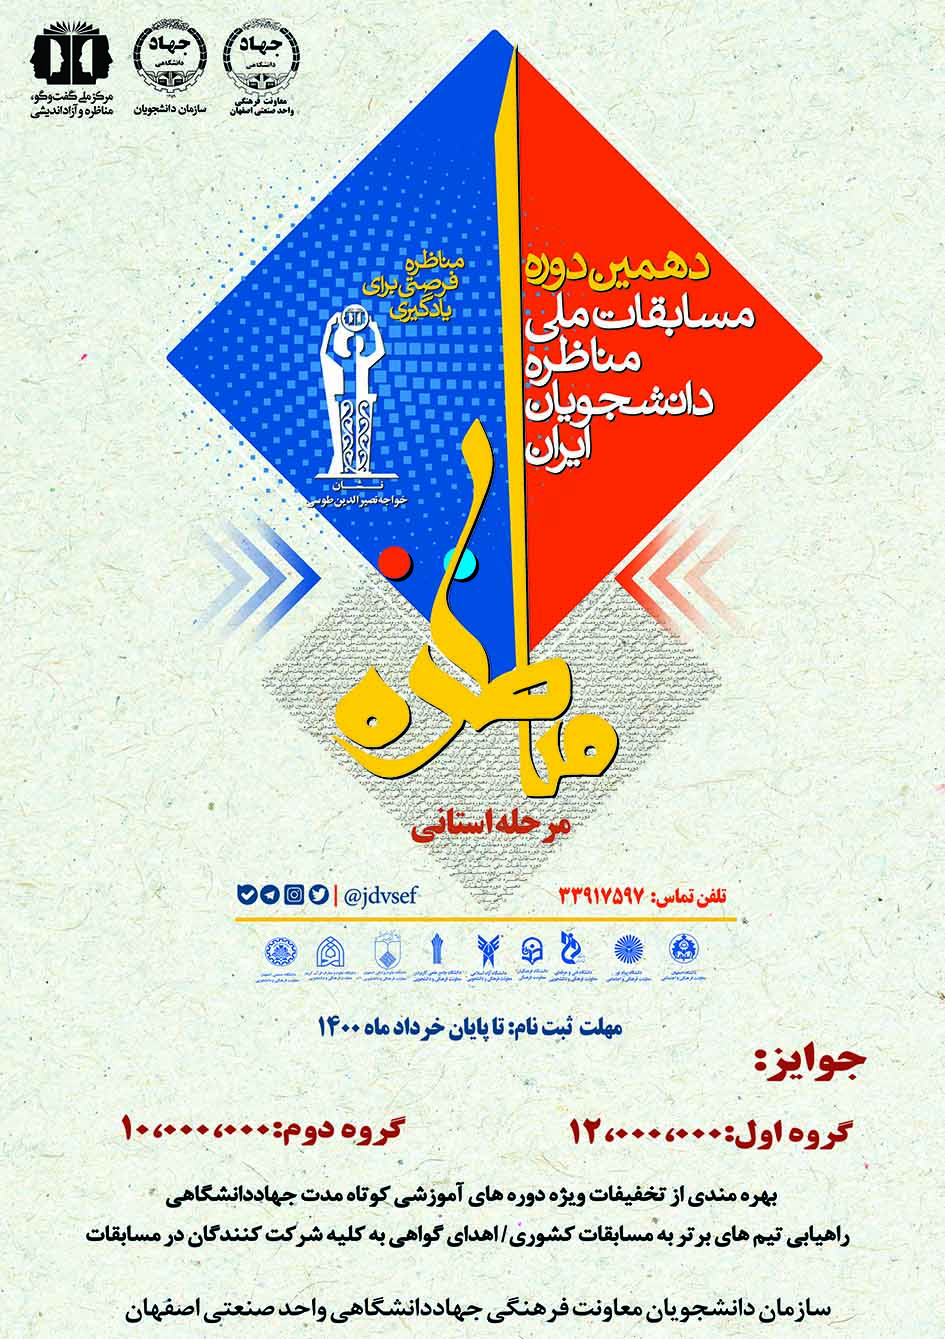 دومین بخش مرحله استانی مسابقات مناظره دانشجویان ایران